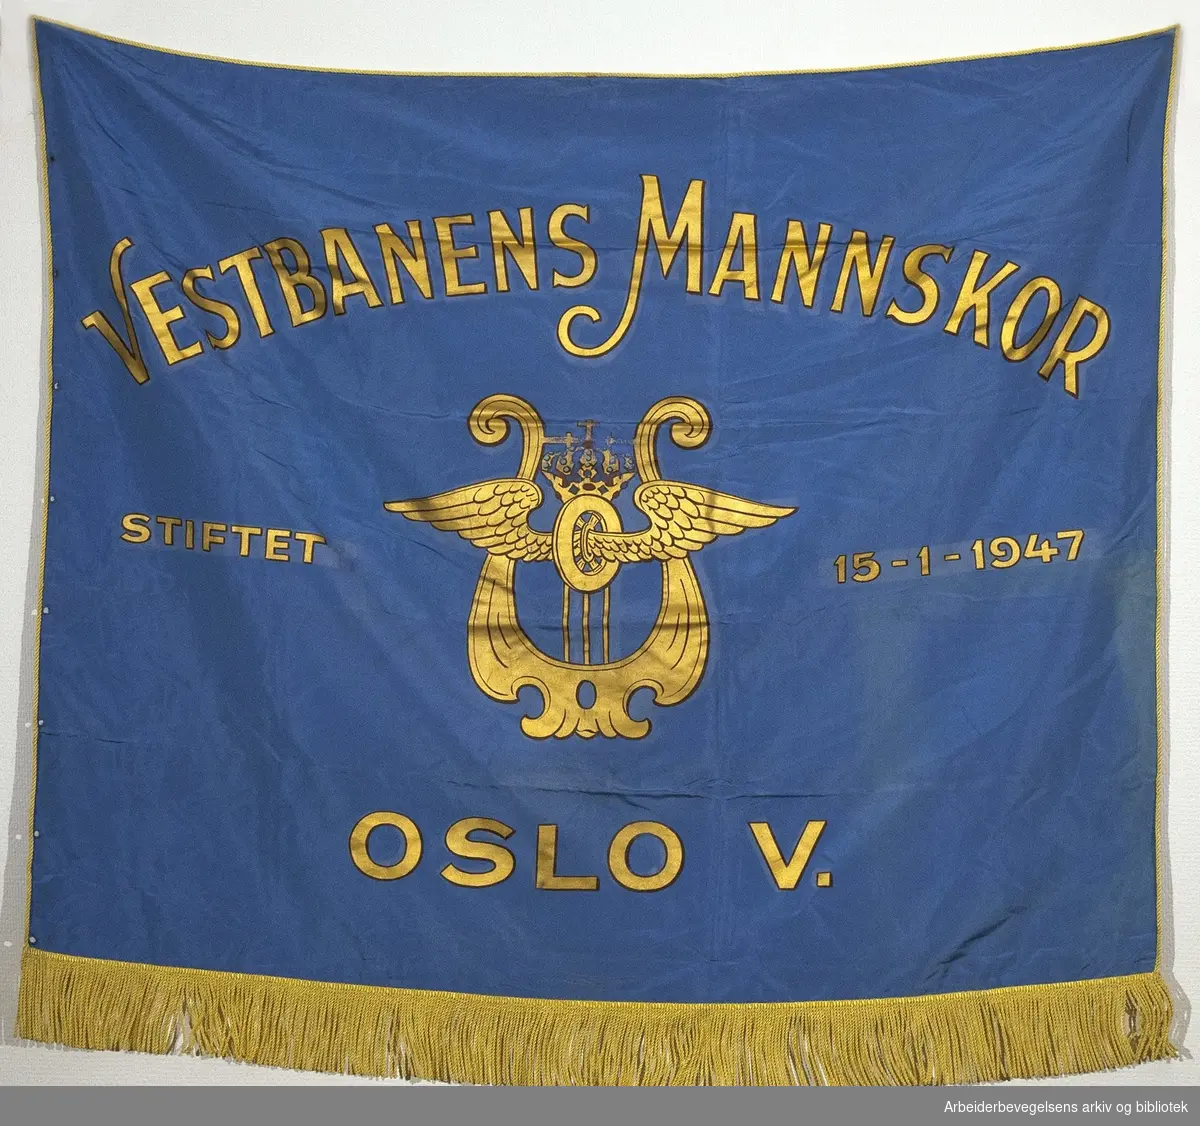 Vestbanens mannskor.Stiftet 15. januar 1947..Forside..Fanetekst:.Vestbanens Mannskor.Stiftet 15. januar 1947.Oslo V.